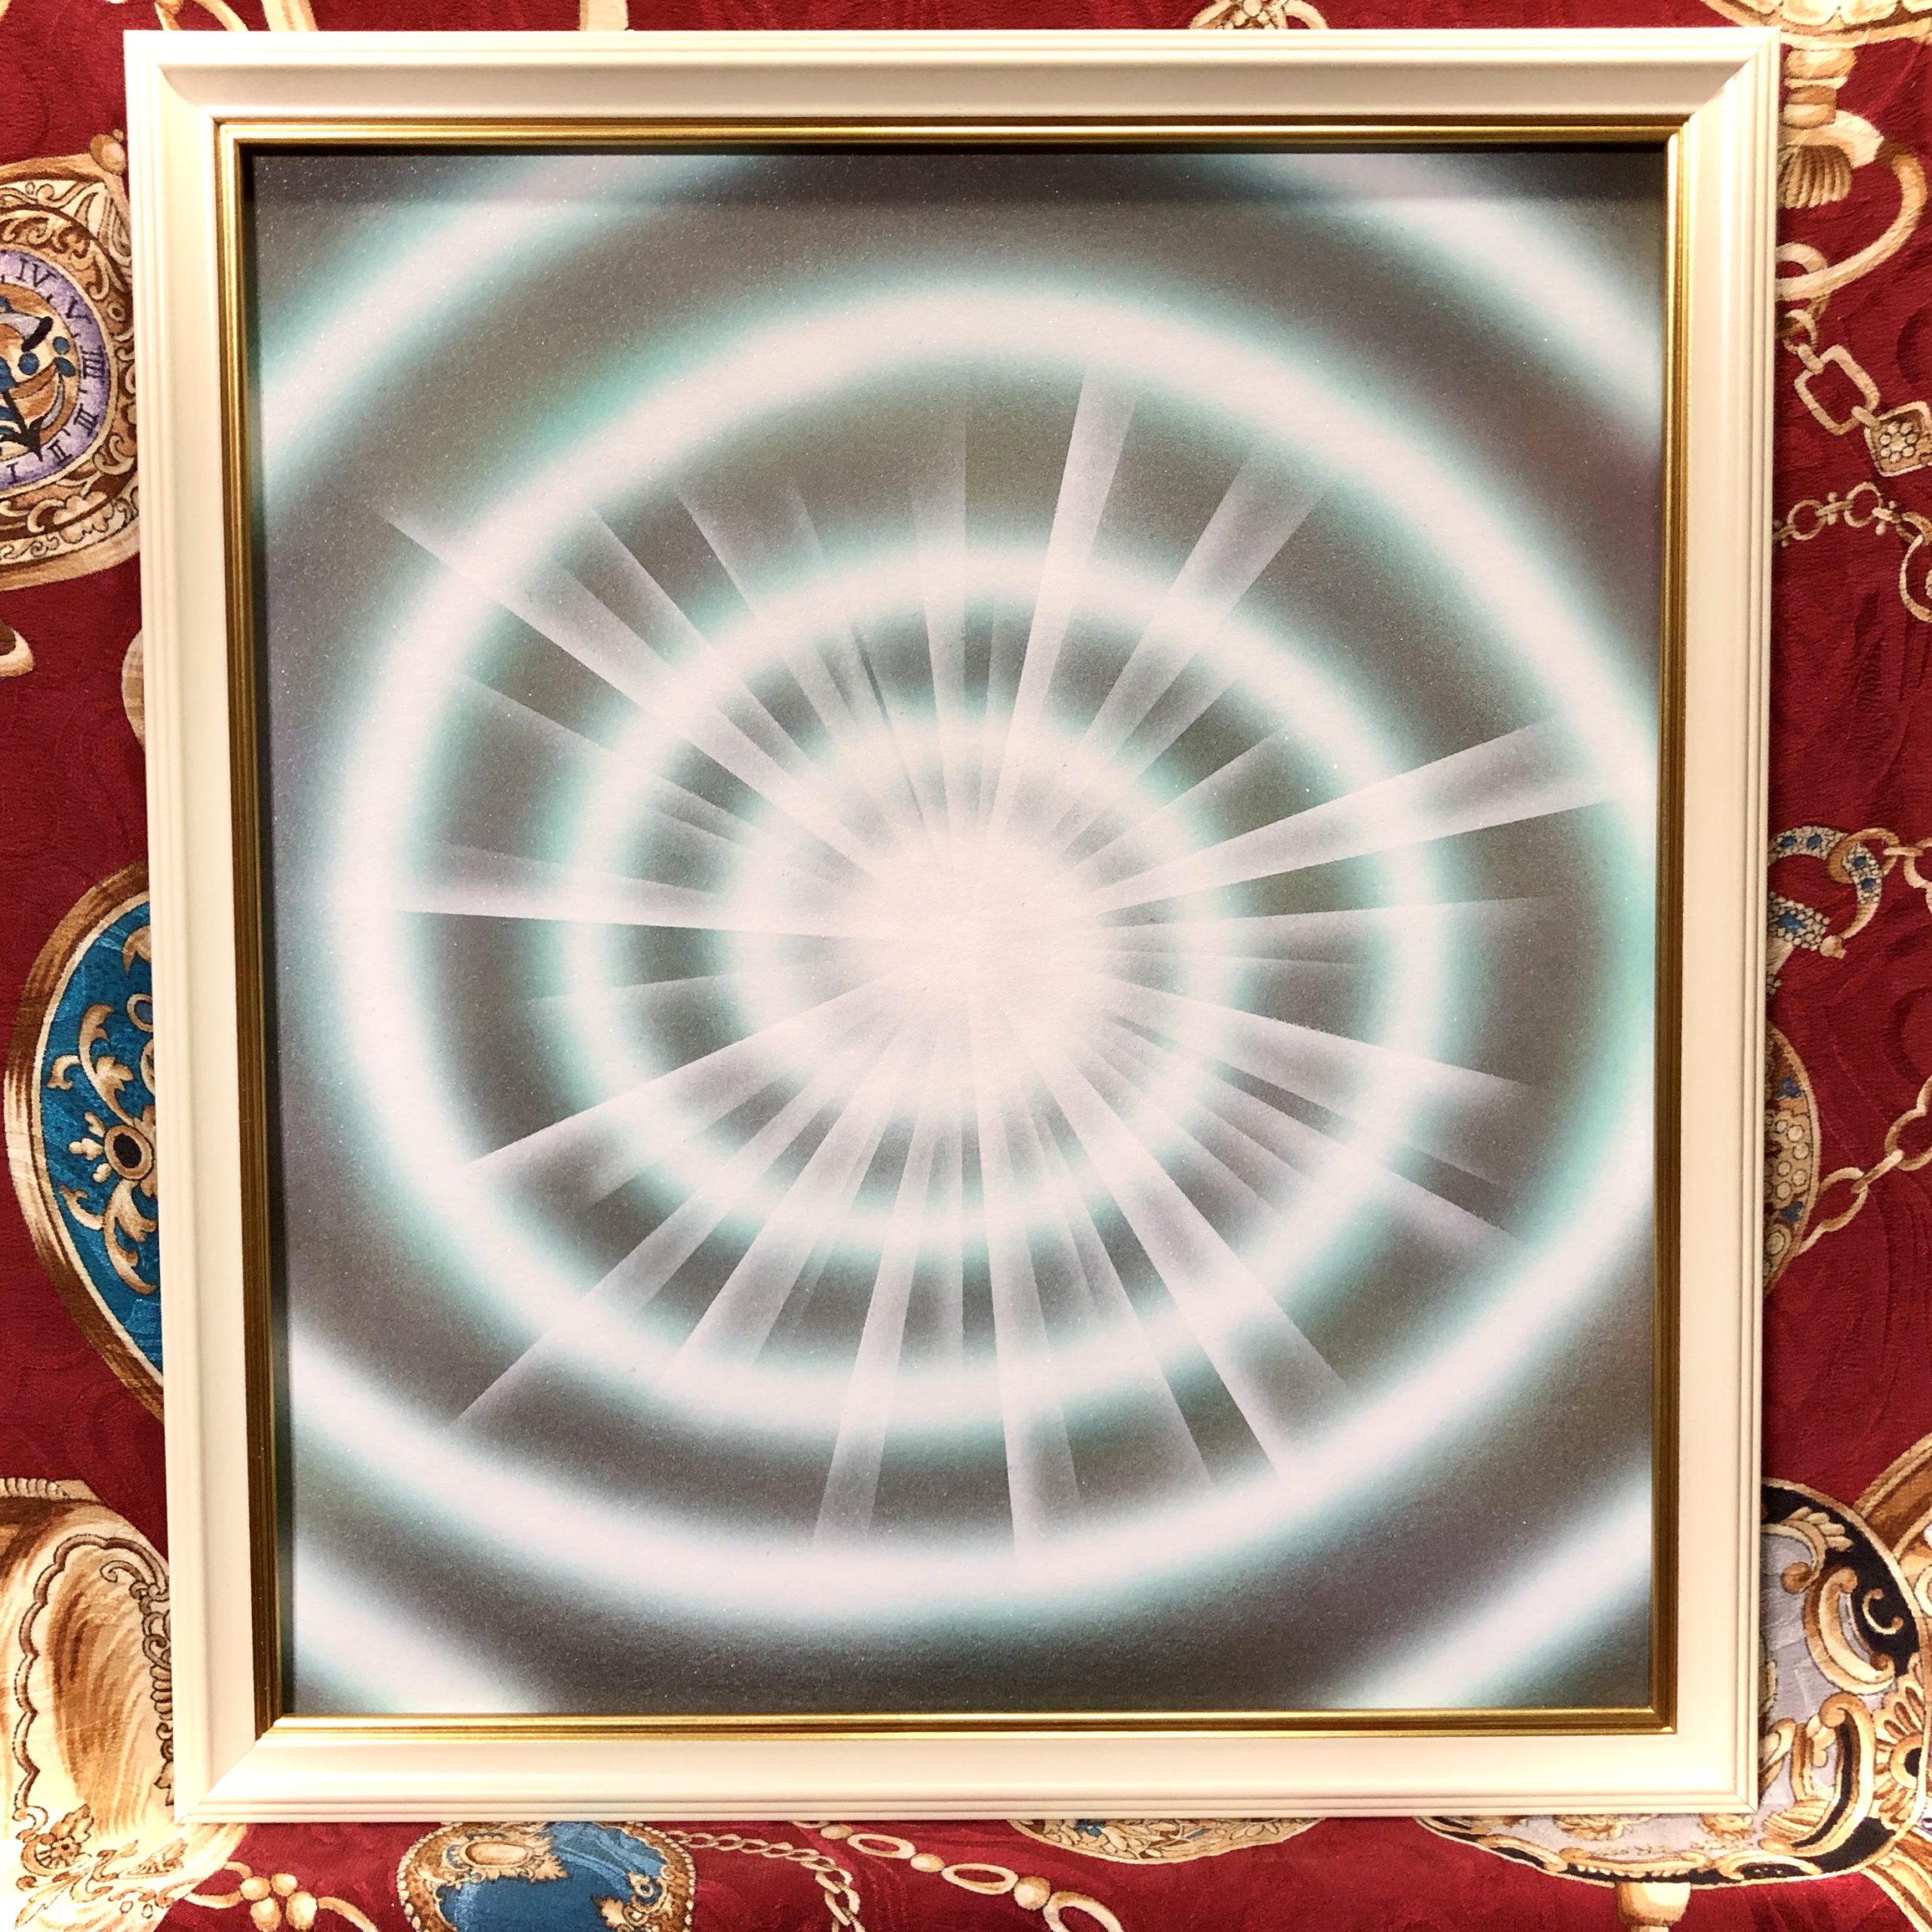 【波動を上げる宇宙の渦】現代アート絵画作品 次元上昇の右渦ボルテックスvortex 銀河コスミックアート